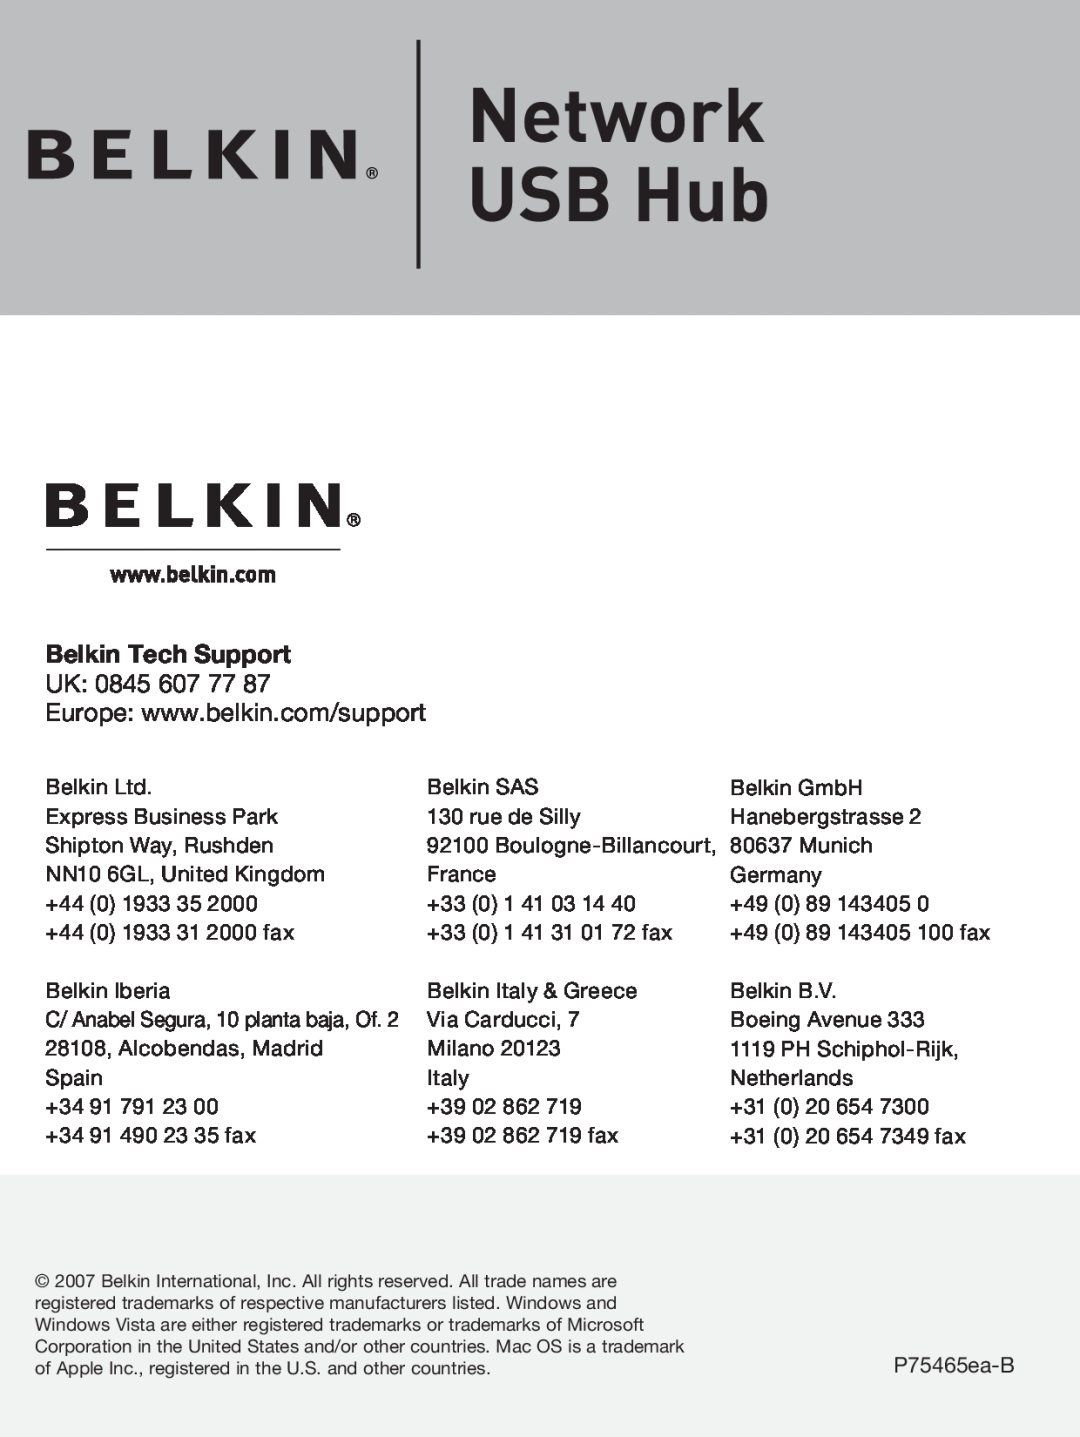 Belkin F5L009 user manual Network USB Hub, Belkin Tech Support, Uk 